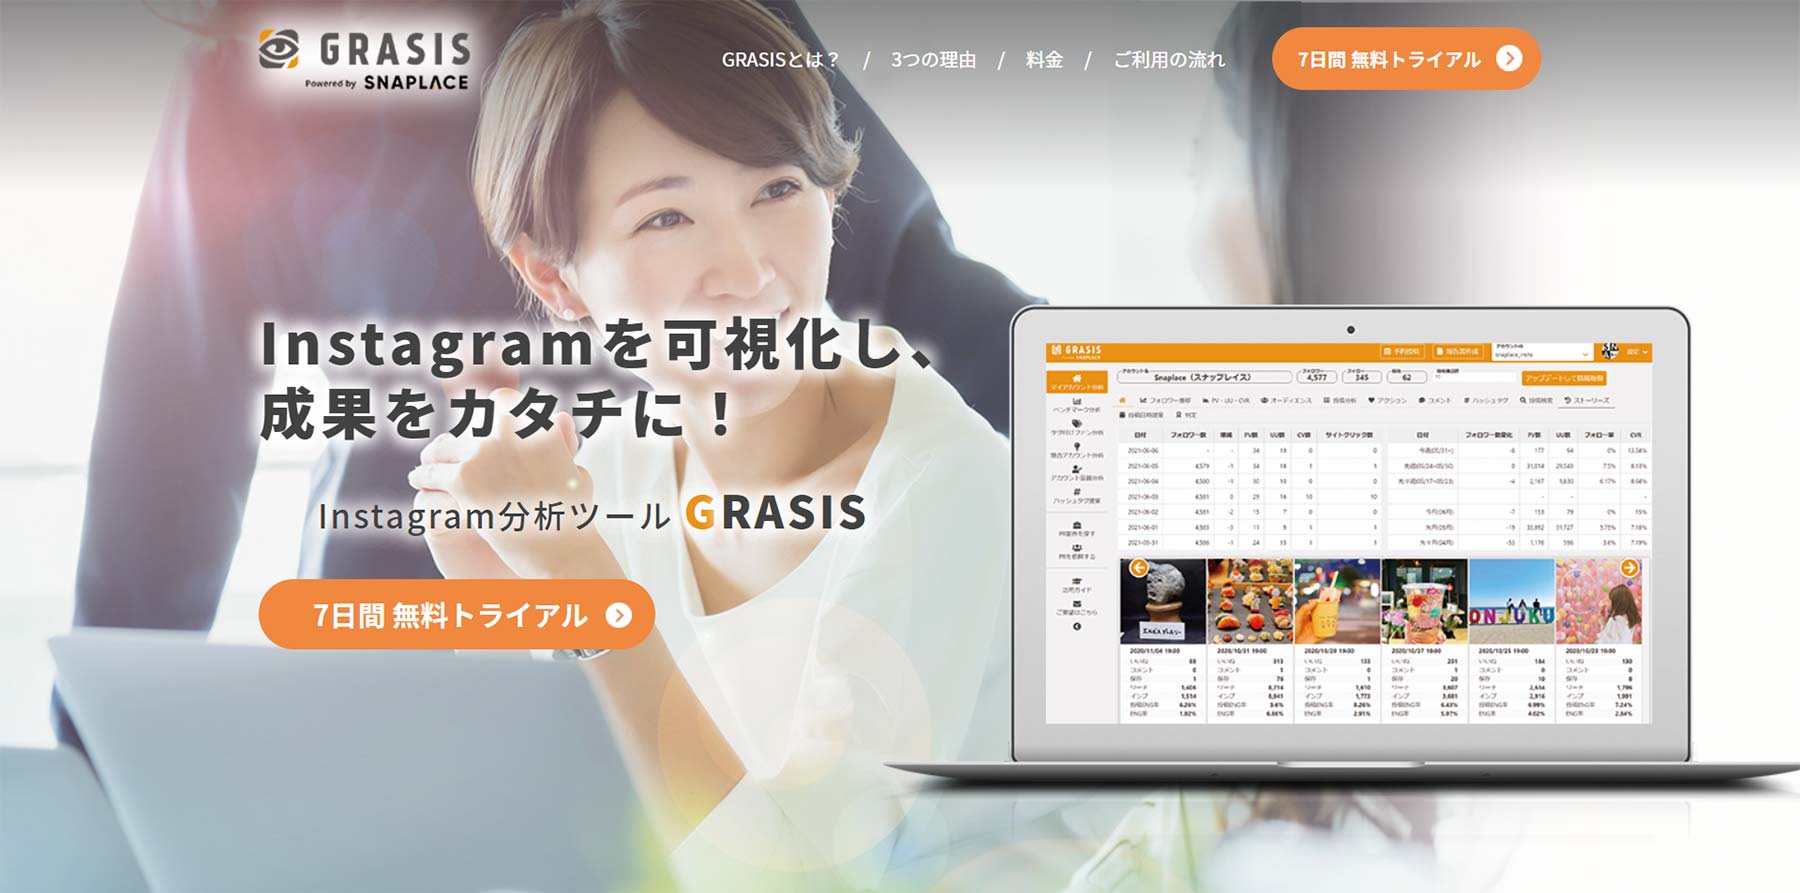 GRASIS公式Webサイト